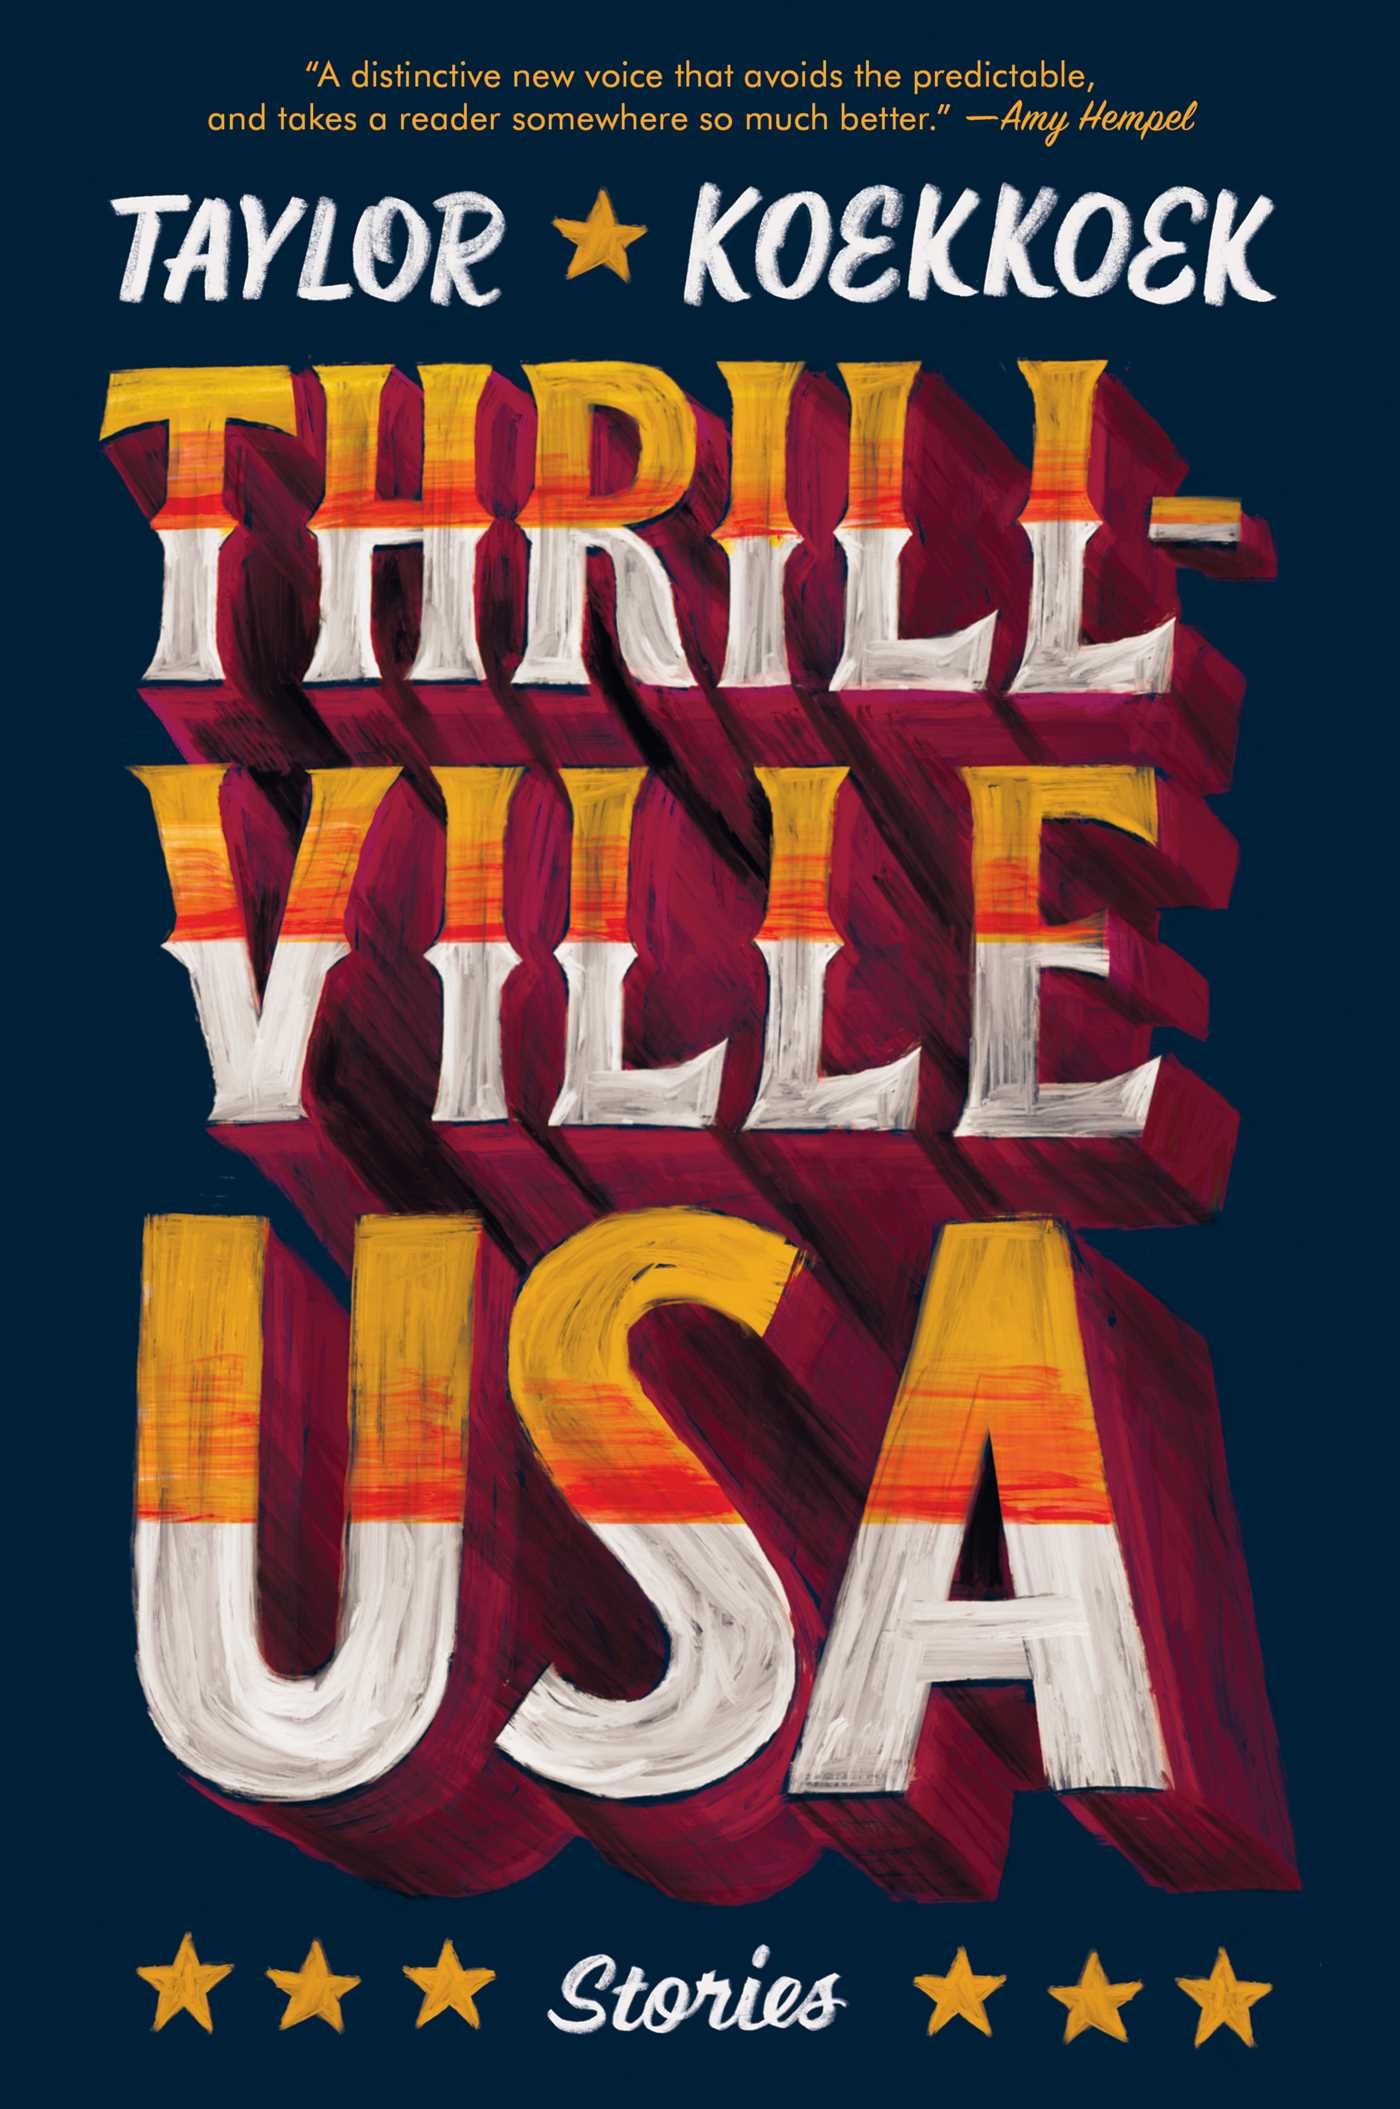 thrillville-usa